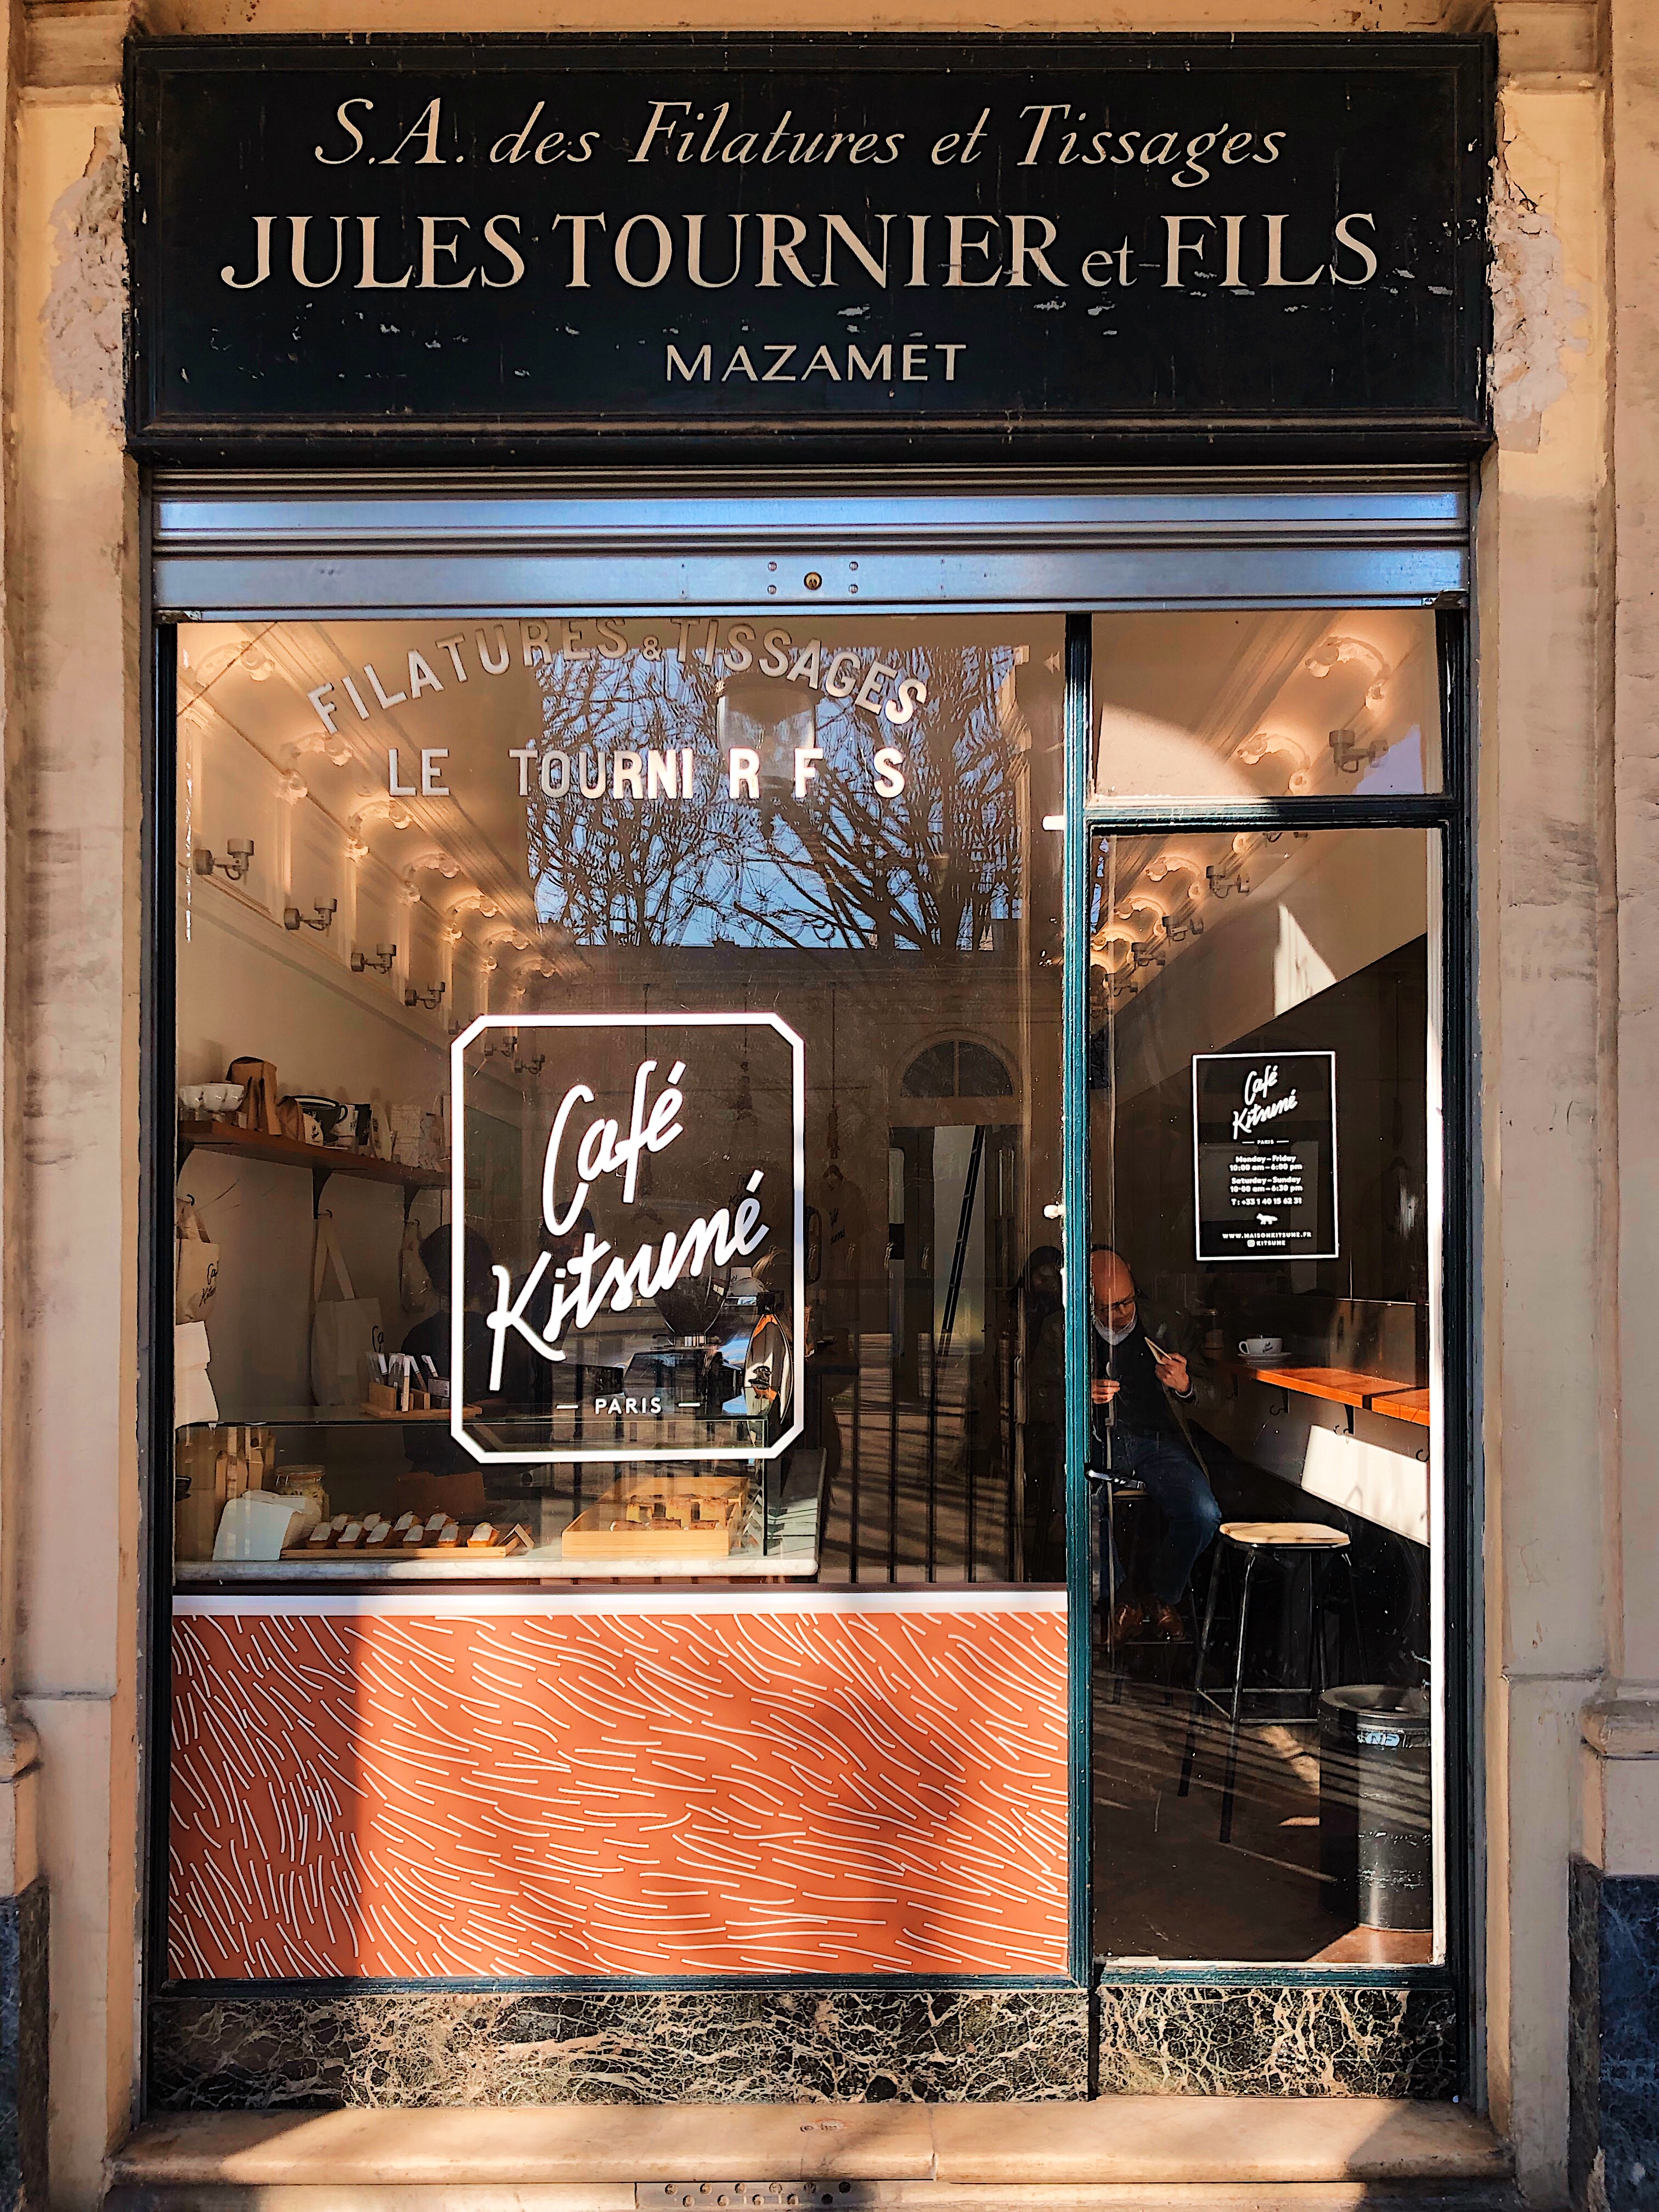 Outside Kitsuné Café Paris